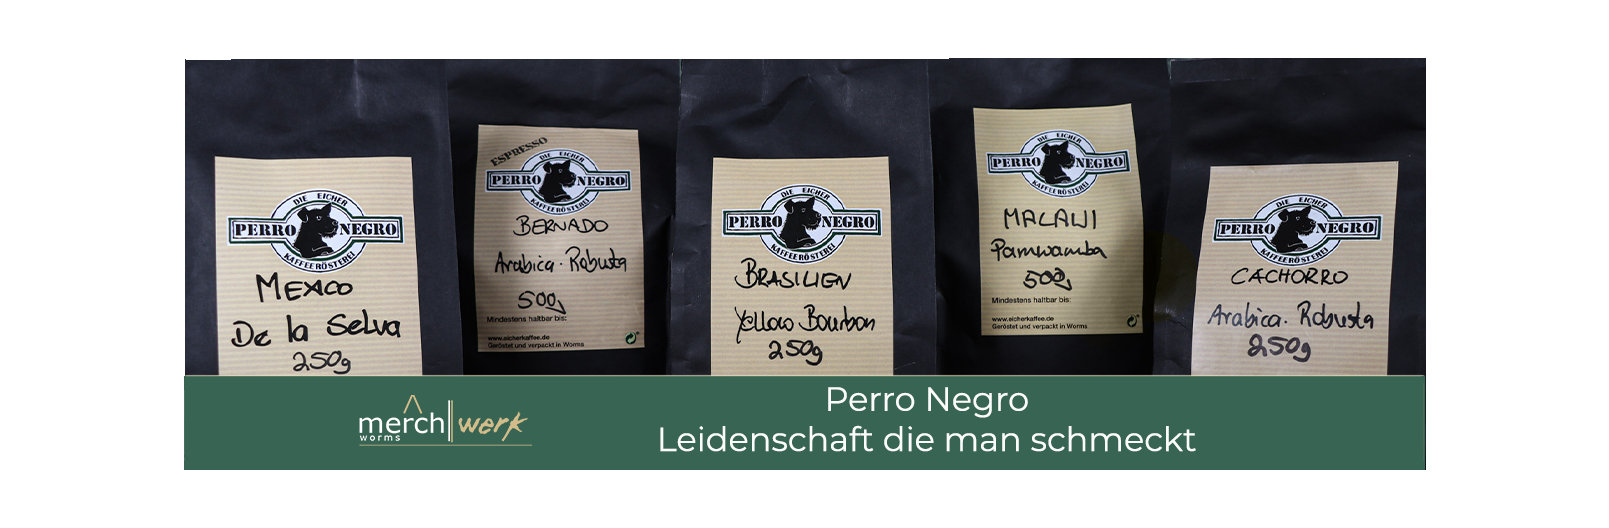 Kaffeegenuss mit Perro Negro 